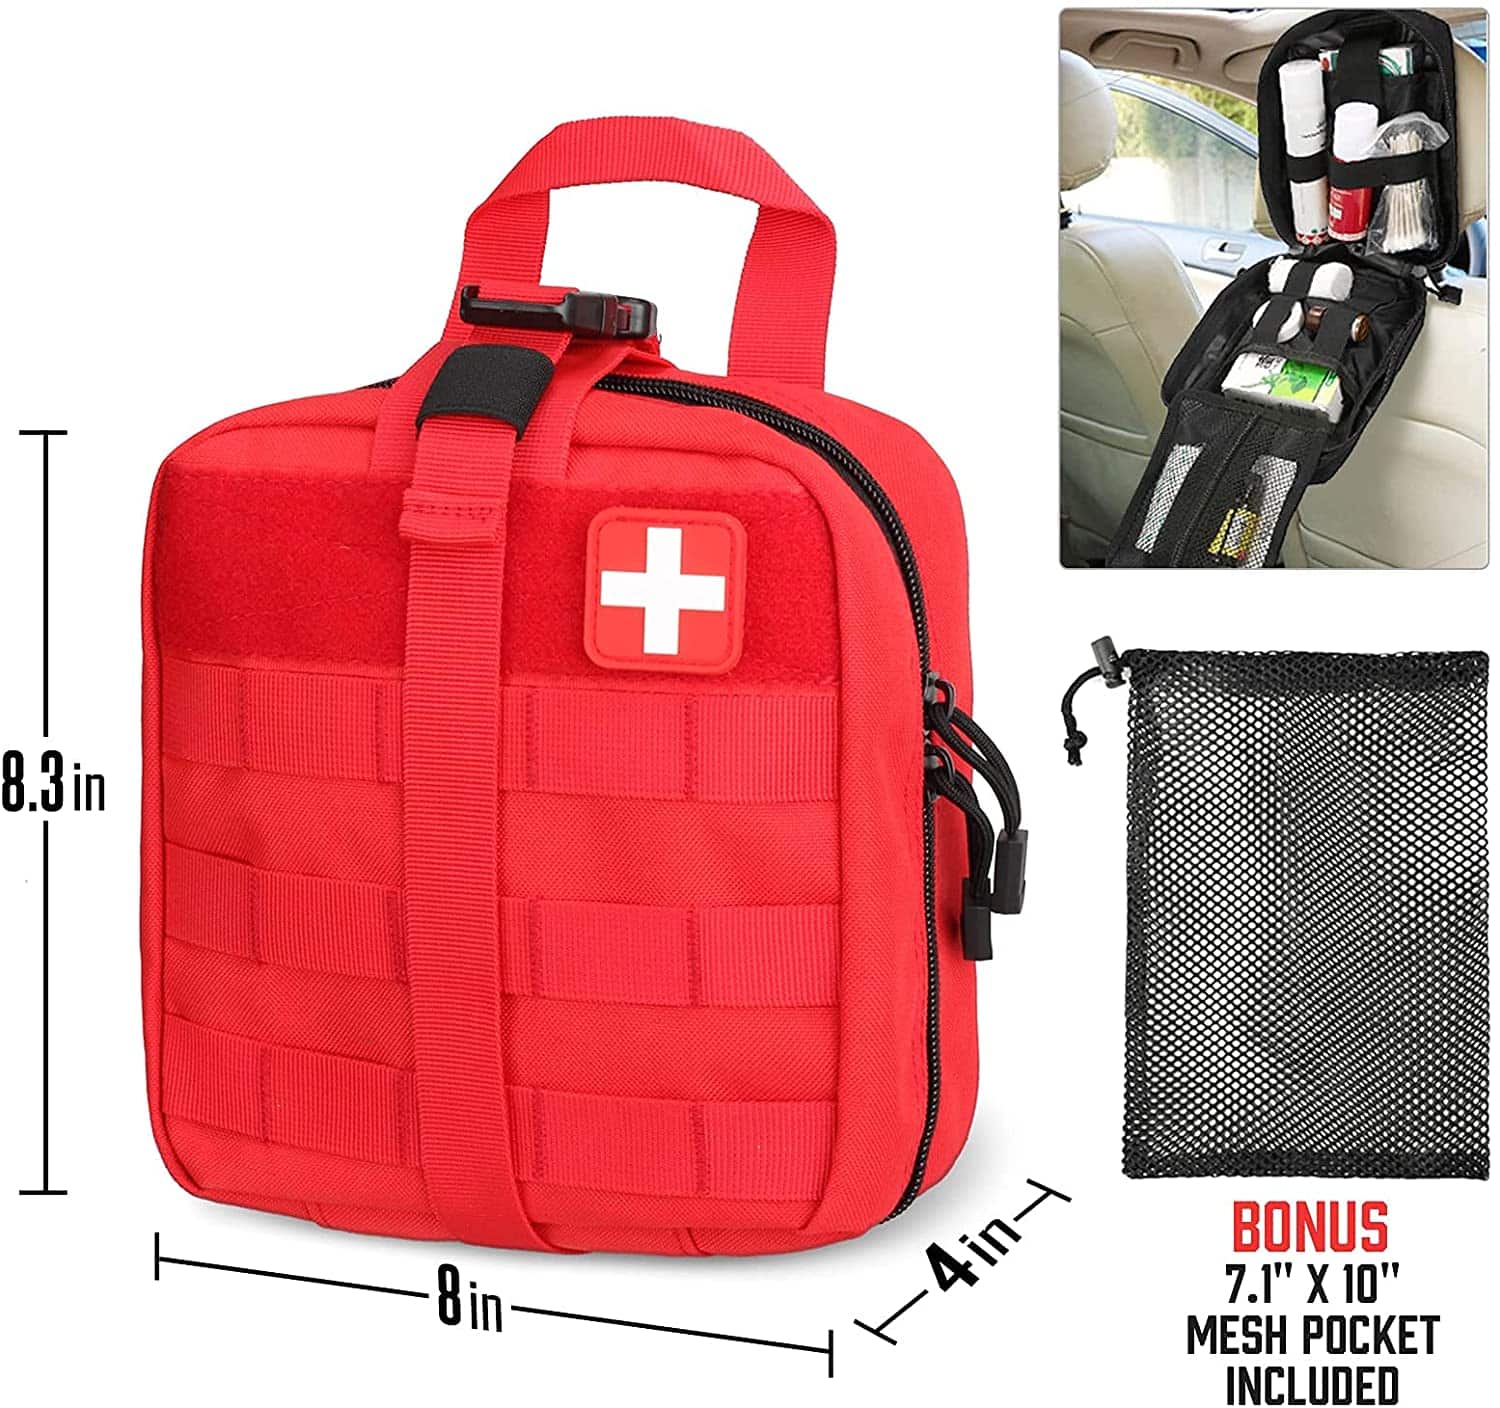 La bolsa médica militar de primeros auxilios tácticos rojos incluye el parche de la Cruz Roja